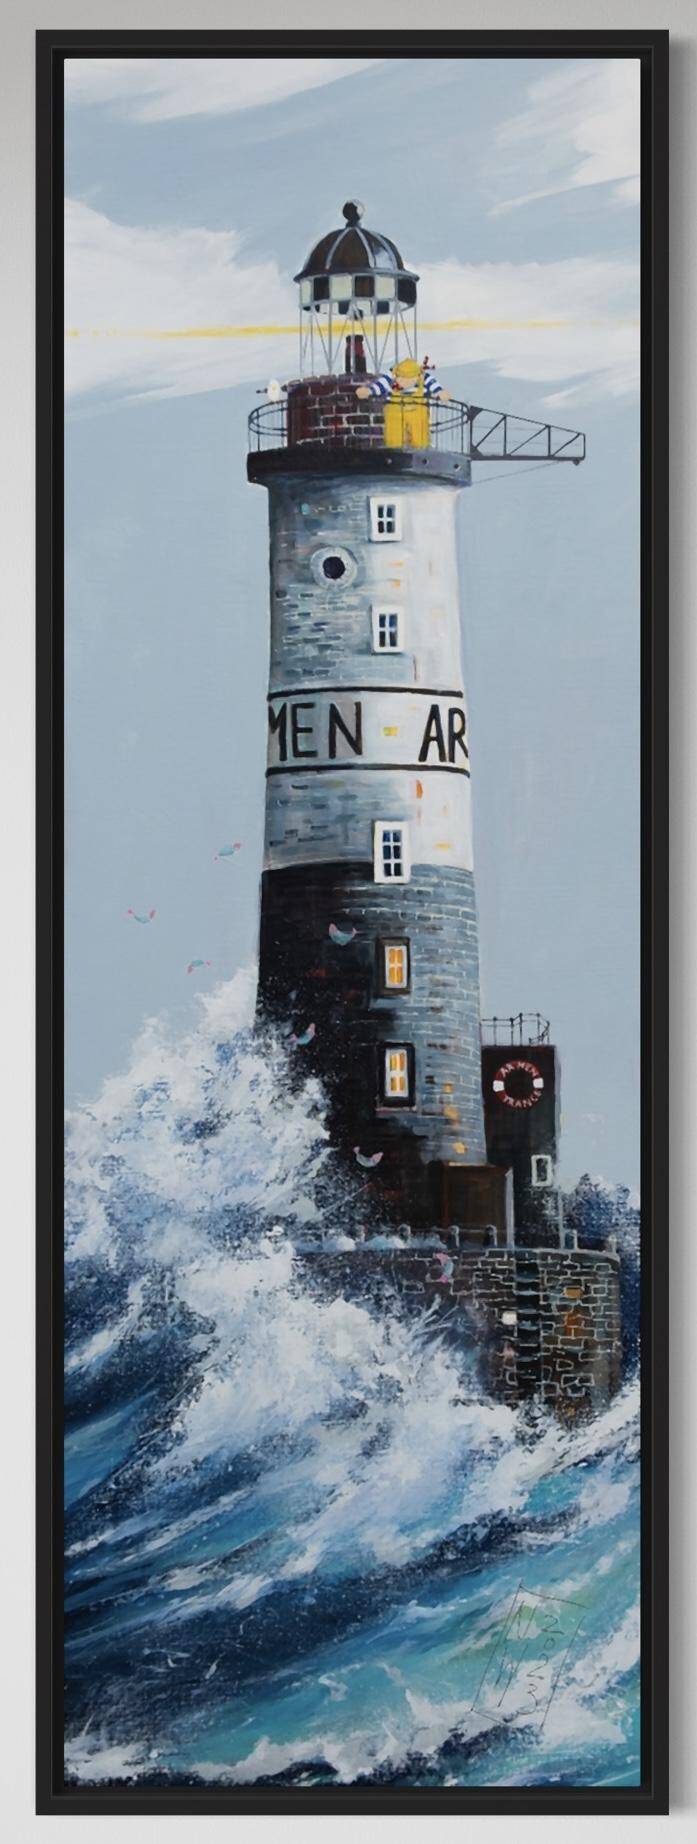 Ar Men - der Leuchtturm Bretagne gemalt von Nicole Wenning